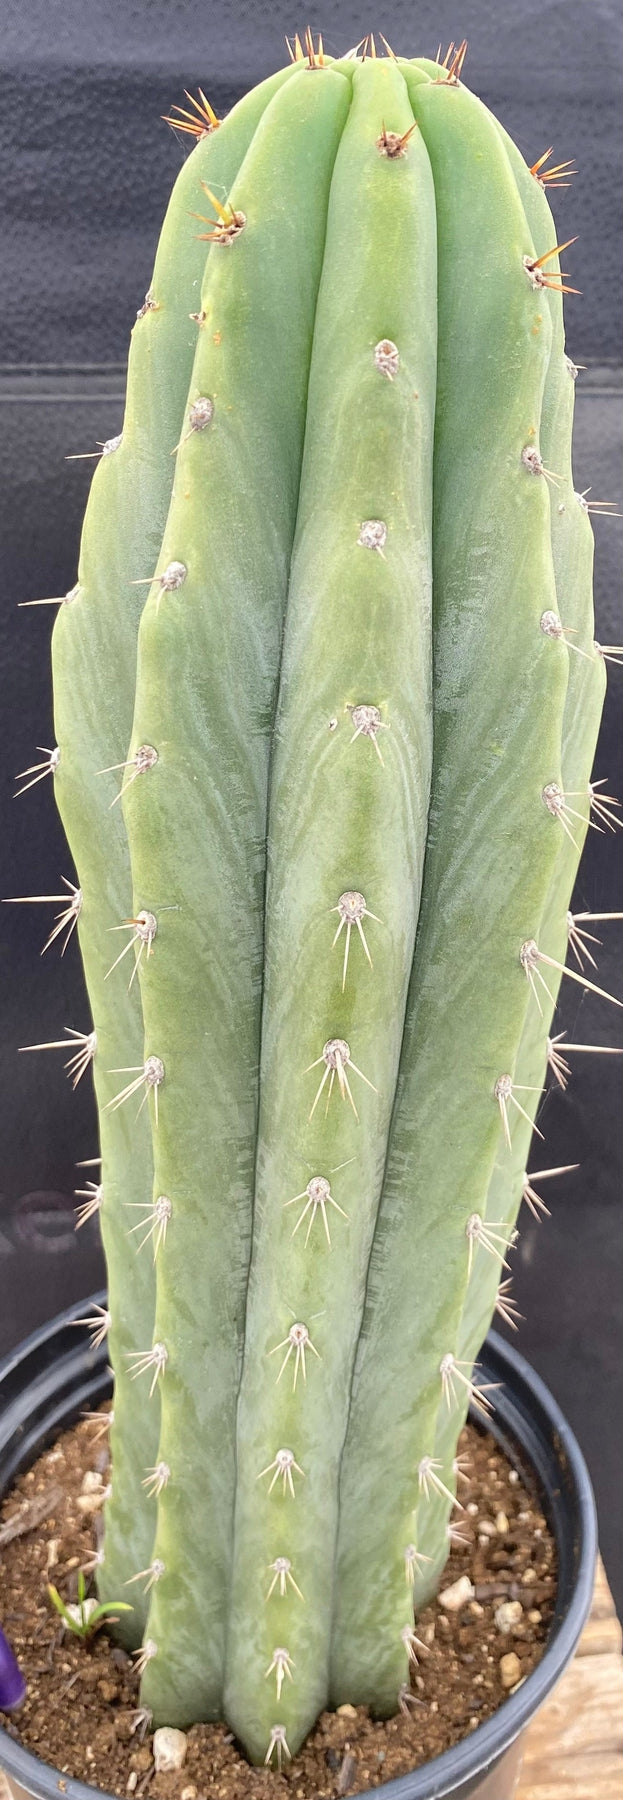 #EC288 EXACT Trichocereus Peruvianus RANCHO Cactus 13.5”